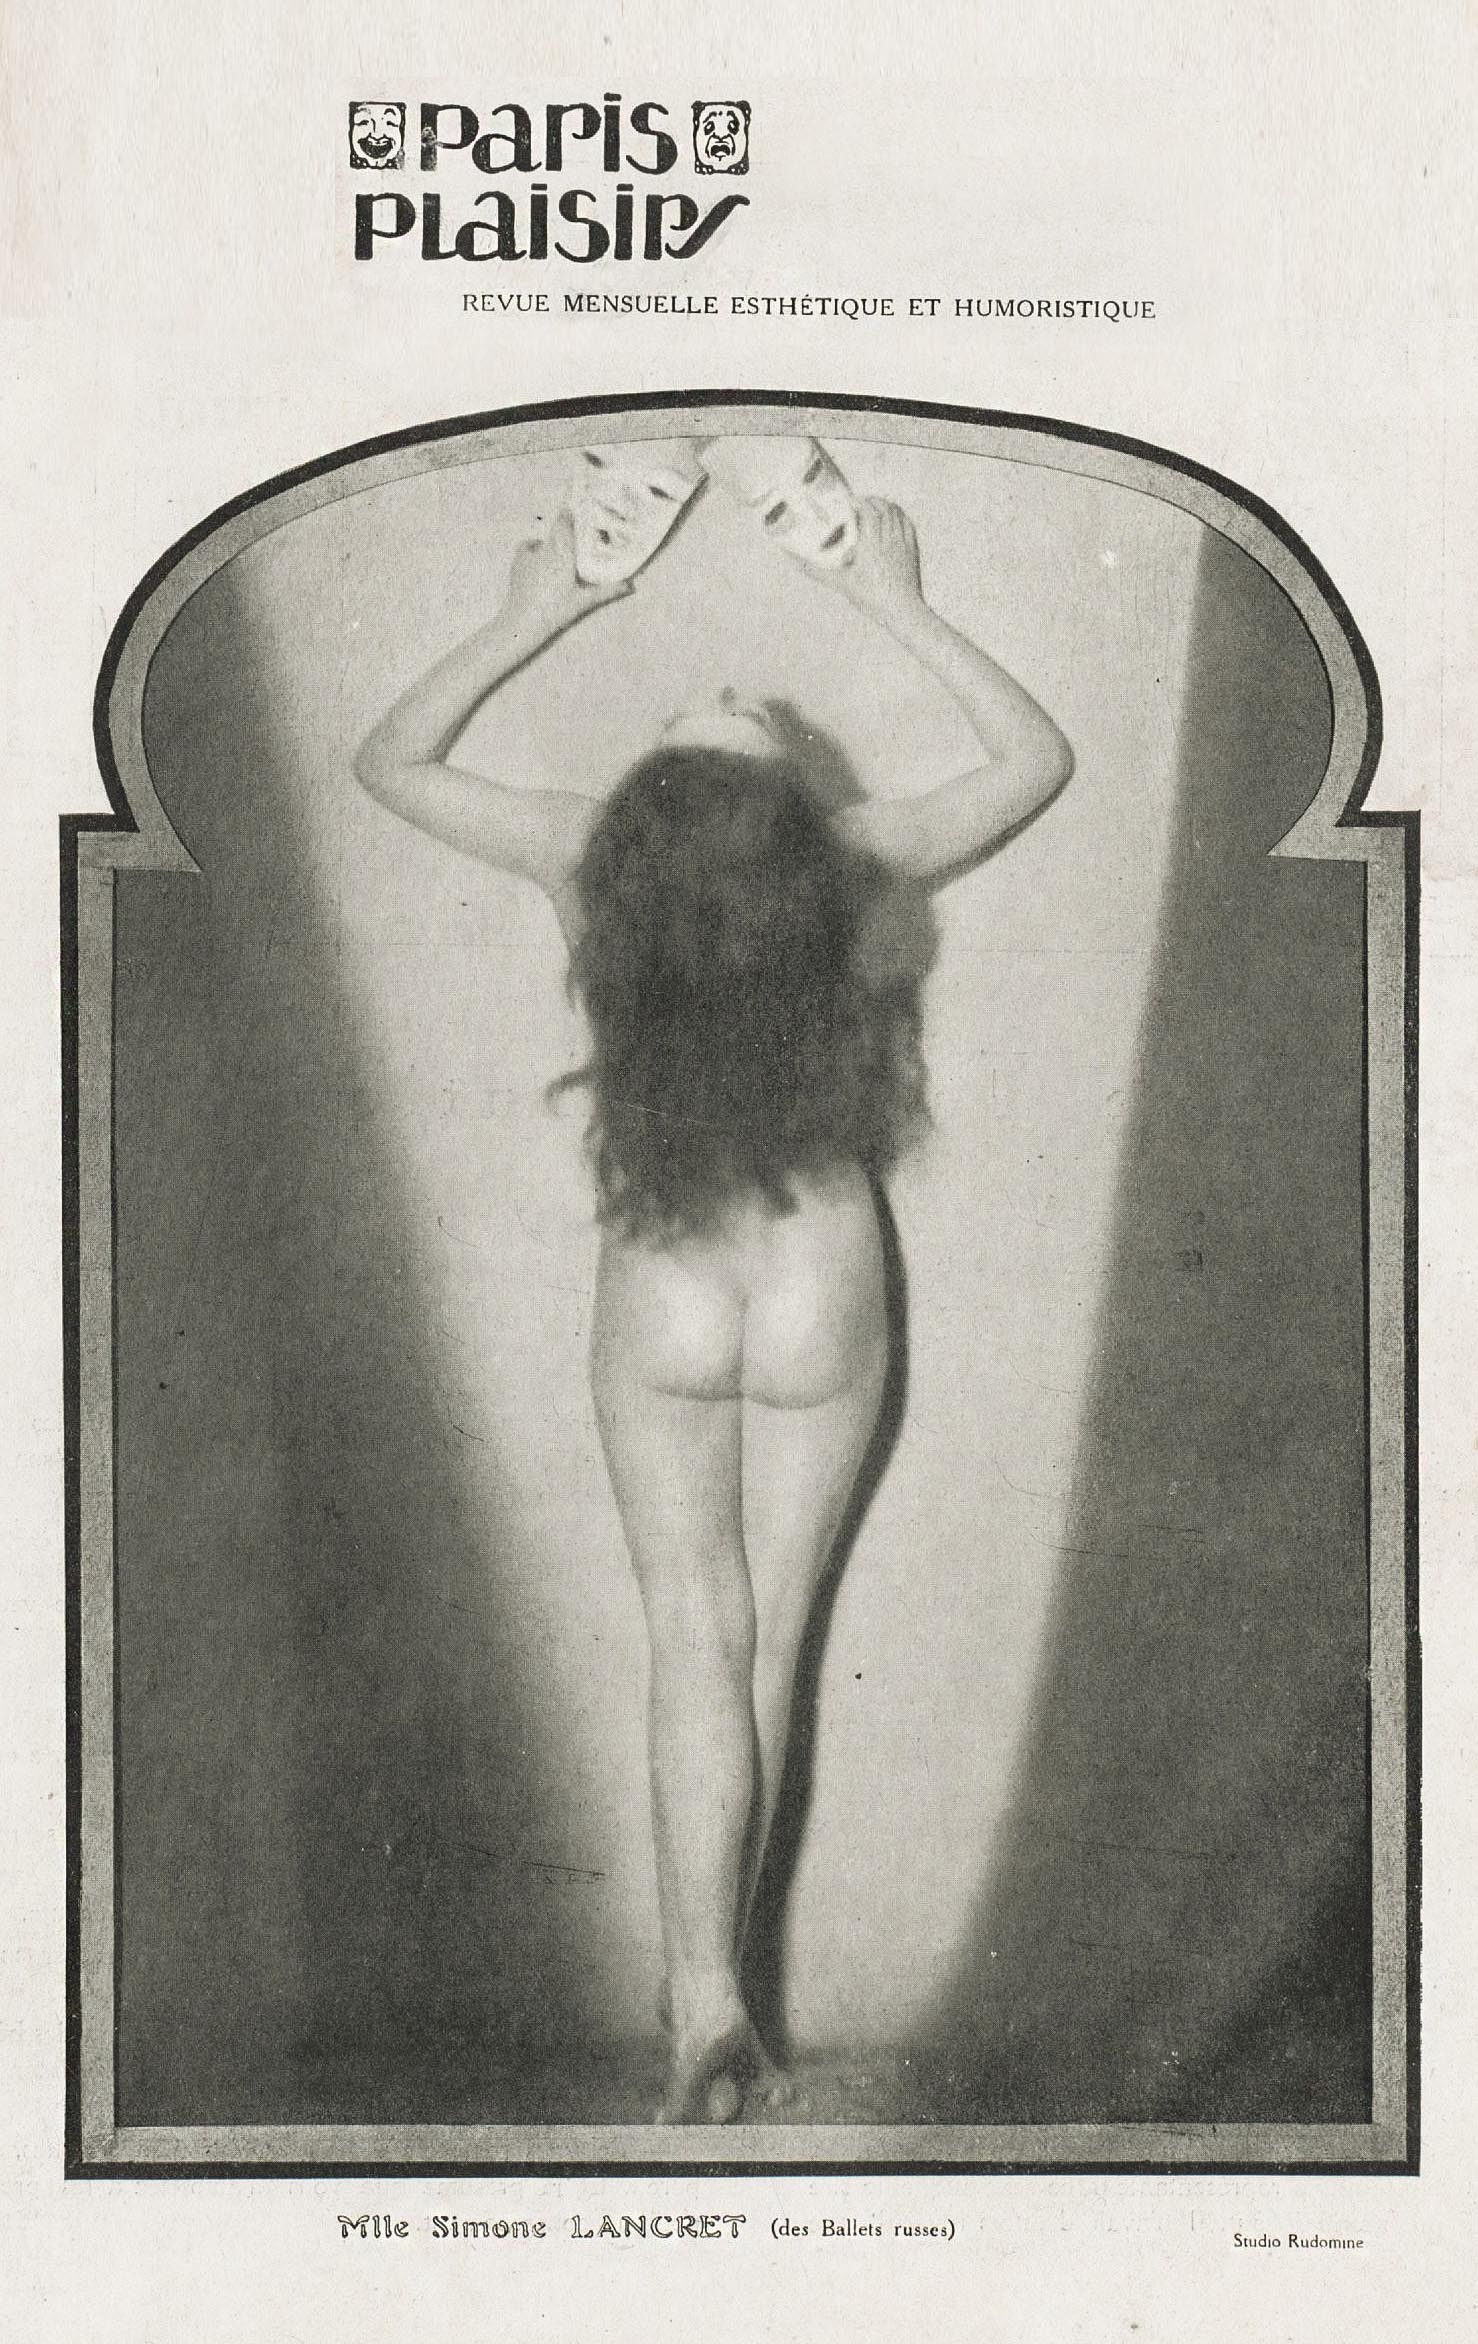 Mlle. Simone Lancret (des Ballets russes). Studio Rudomine. Paris-plaisirs: revue mensuelle esthétique et humoristique Nº 7. Décembre, 1922. | src BnF ~ Gallica